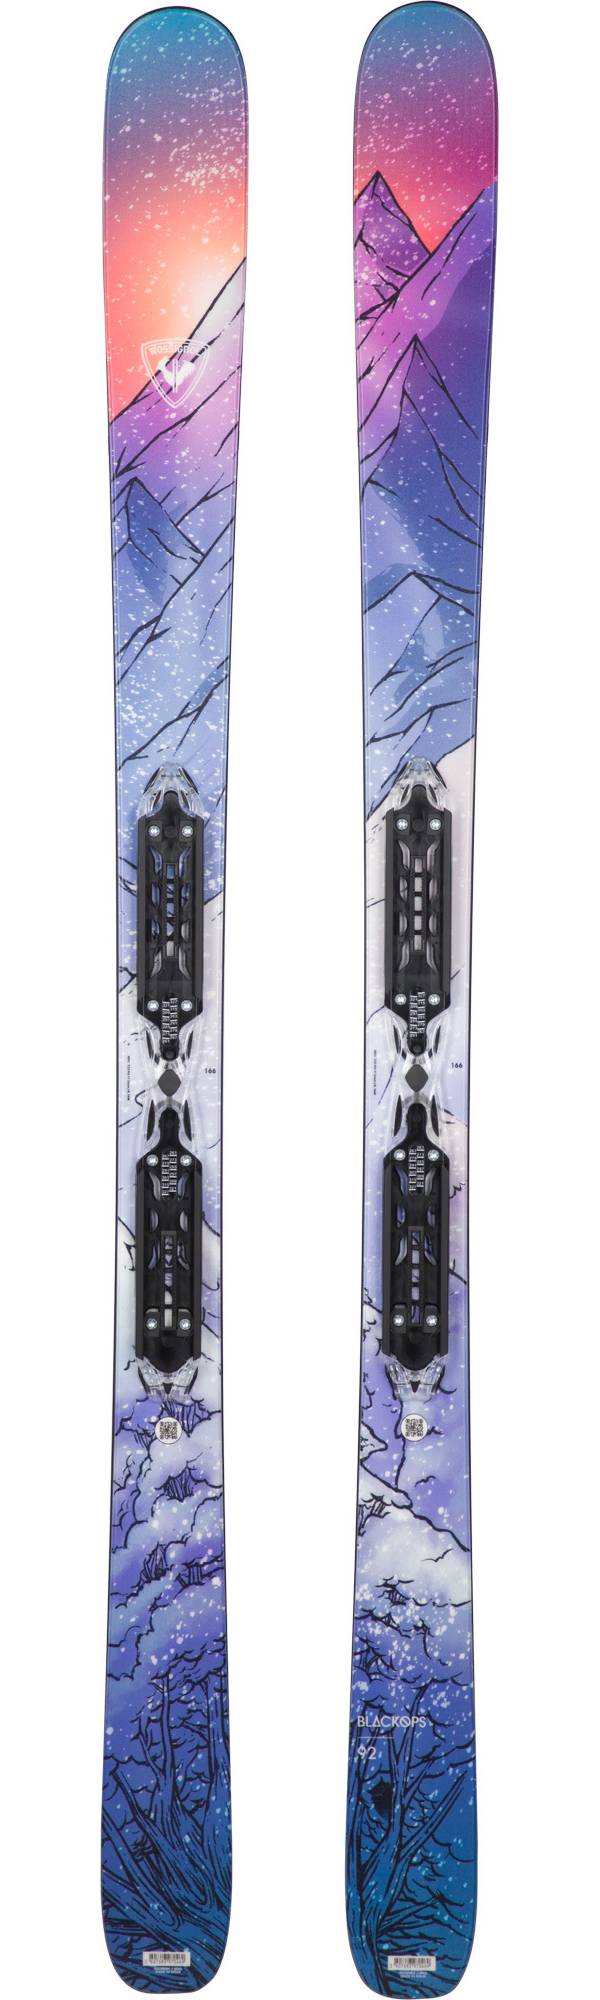 Rossignol Blackops 92 XP11 Freeride Skis product image